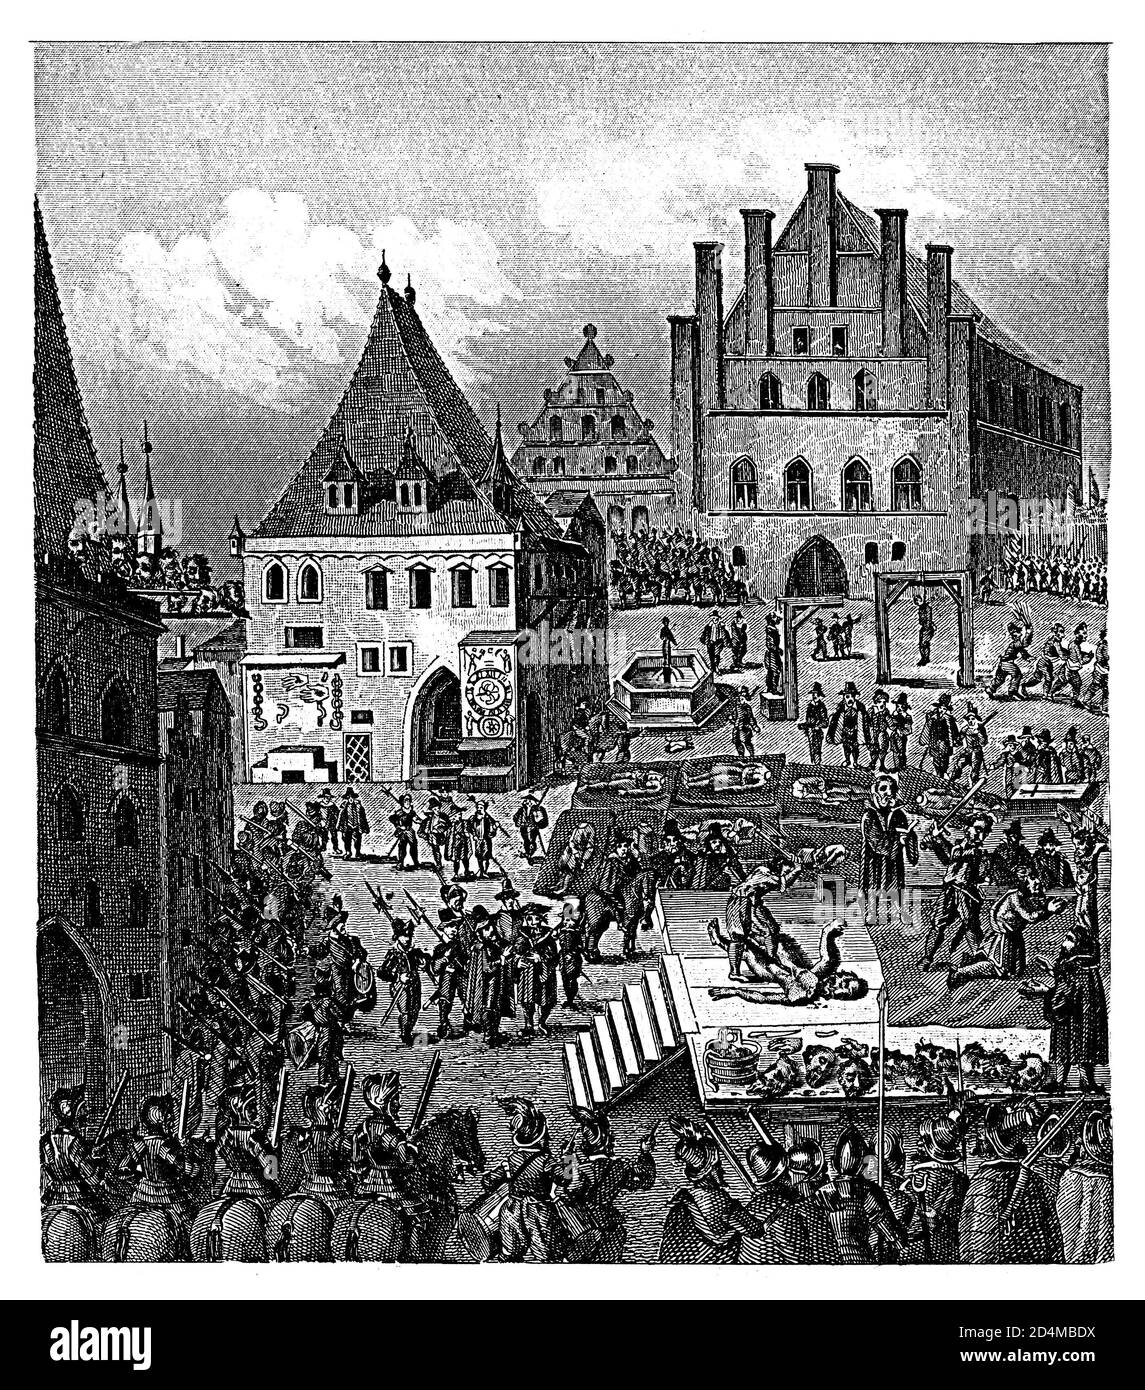 Stich der Rebellen auf dem Altstädter Ring in Prag im XVII. Jahrhundert (21.06.1621). Veröffentlicht in Systematischer Bilder-Atlas zu Stockfoto